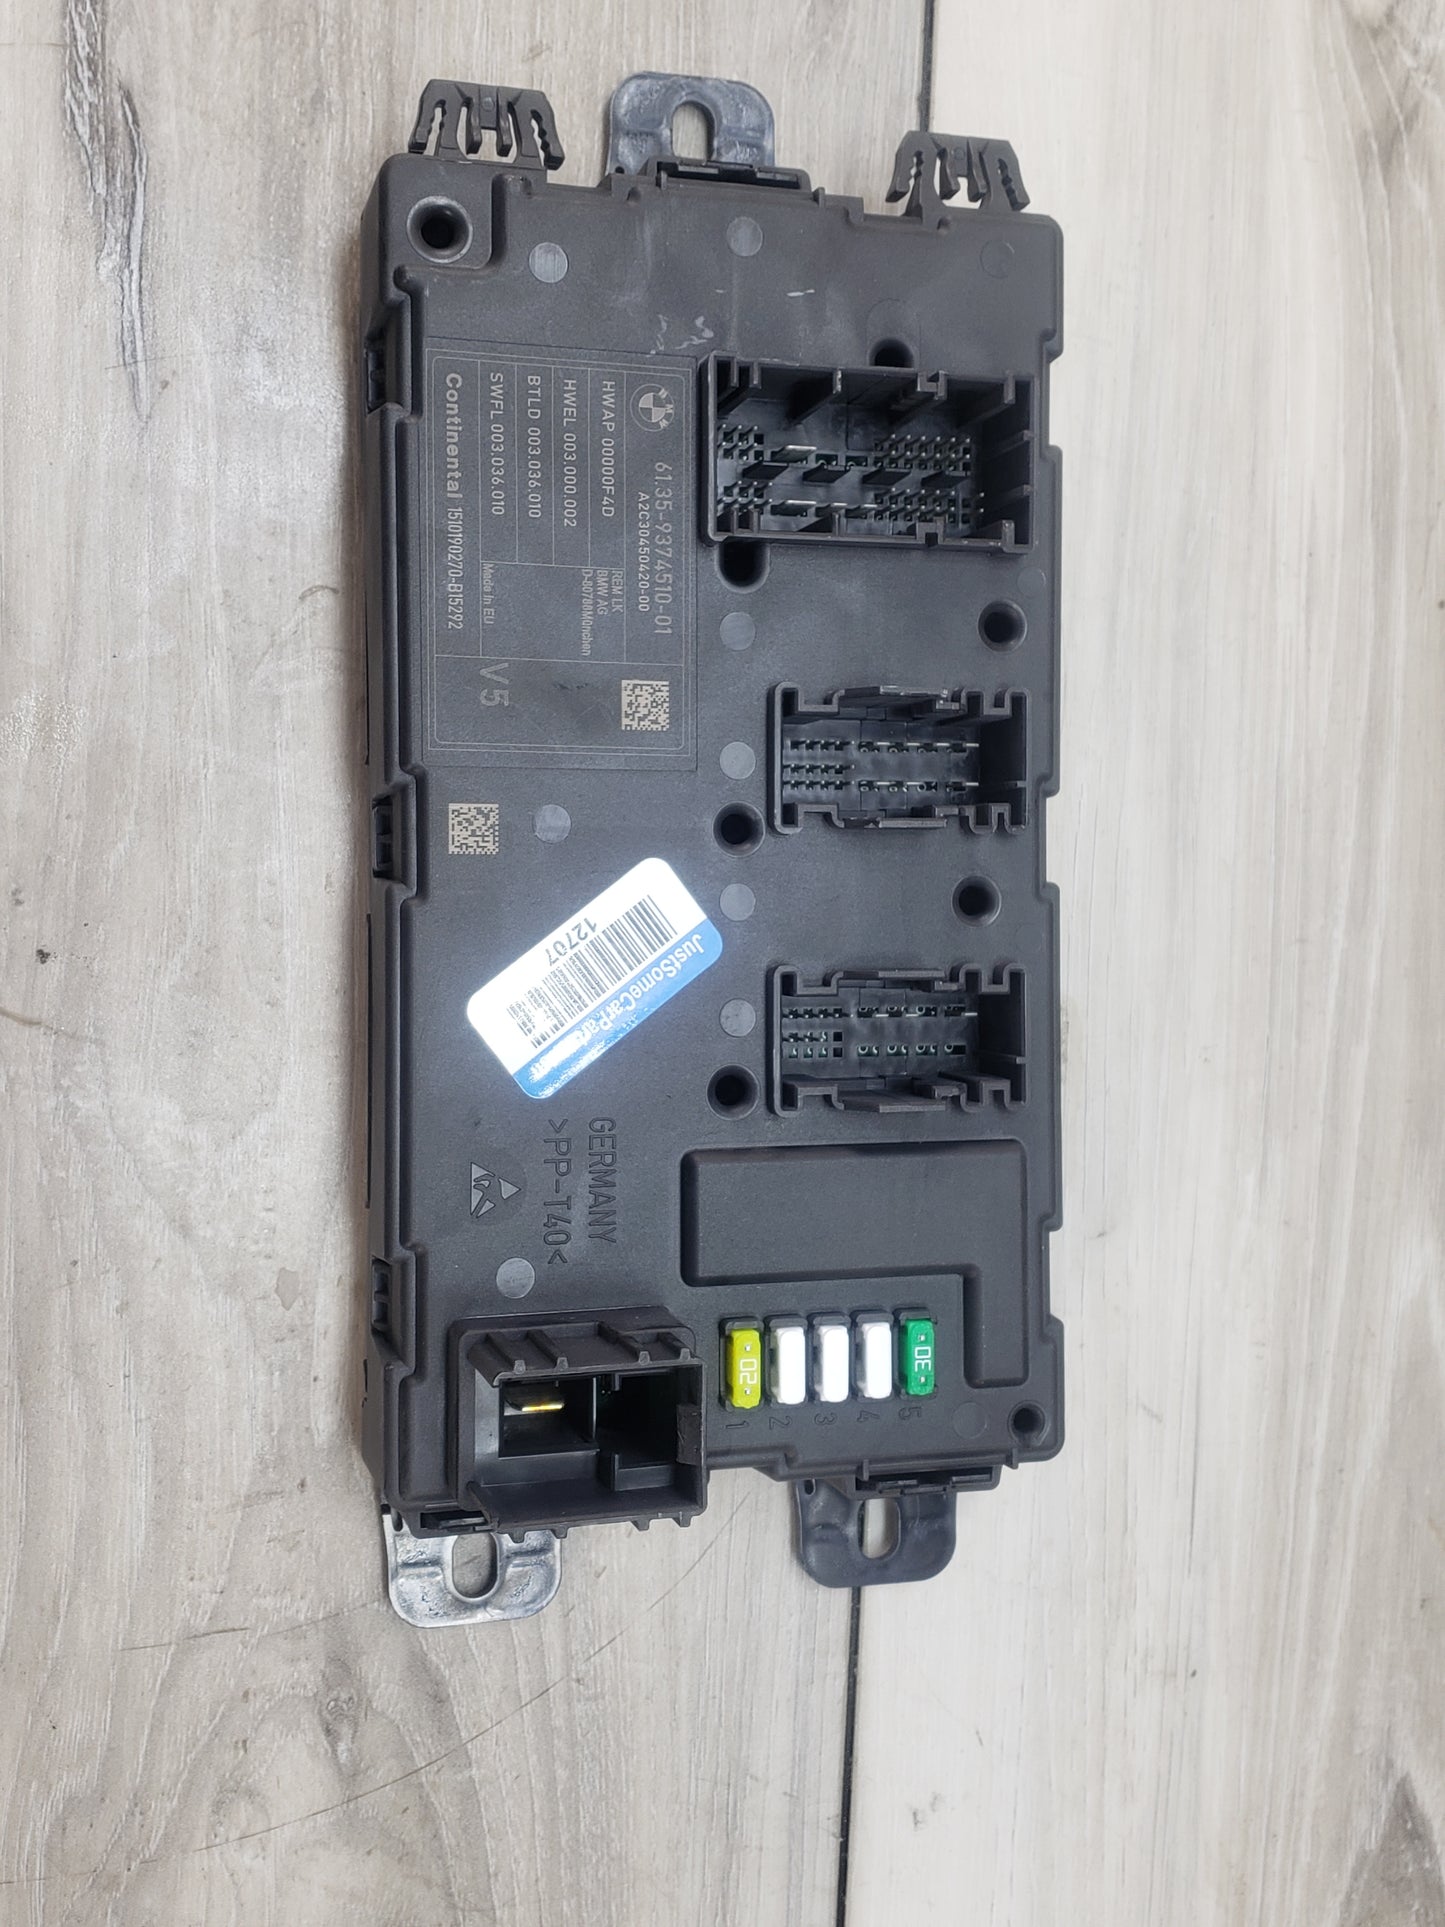 BMW 09-11 E82 135i REM Rear Body Control Unit Electronic Module BCM Box Pre LCI